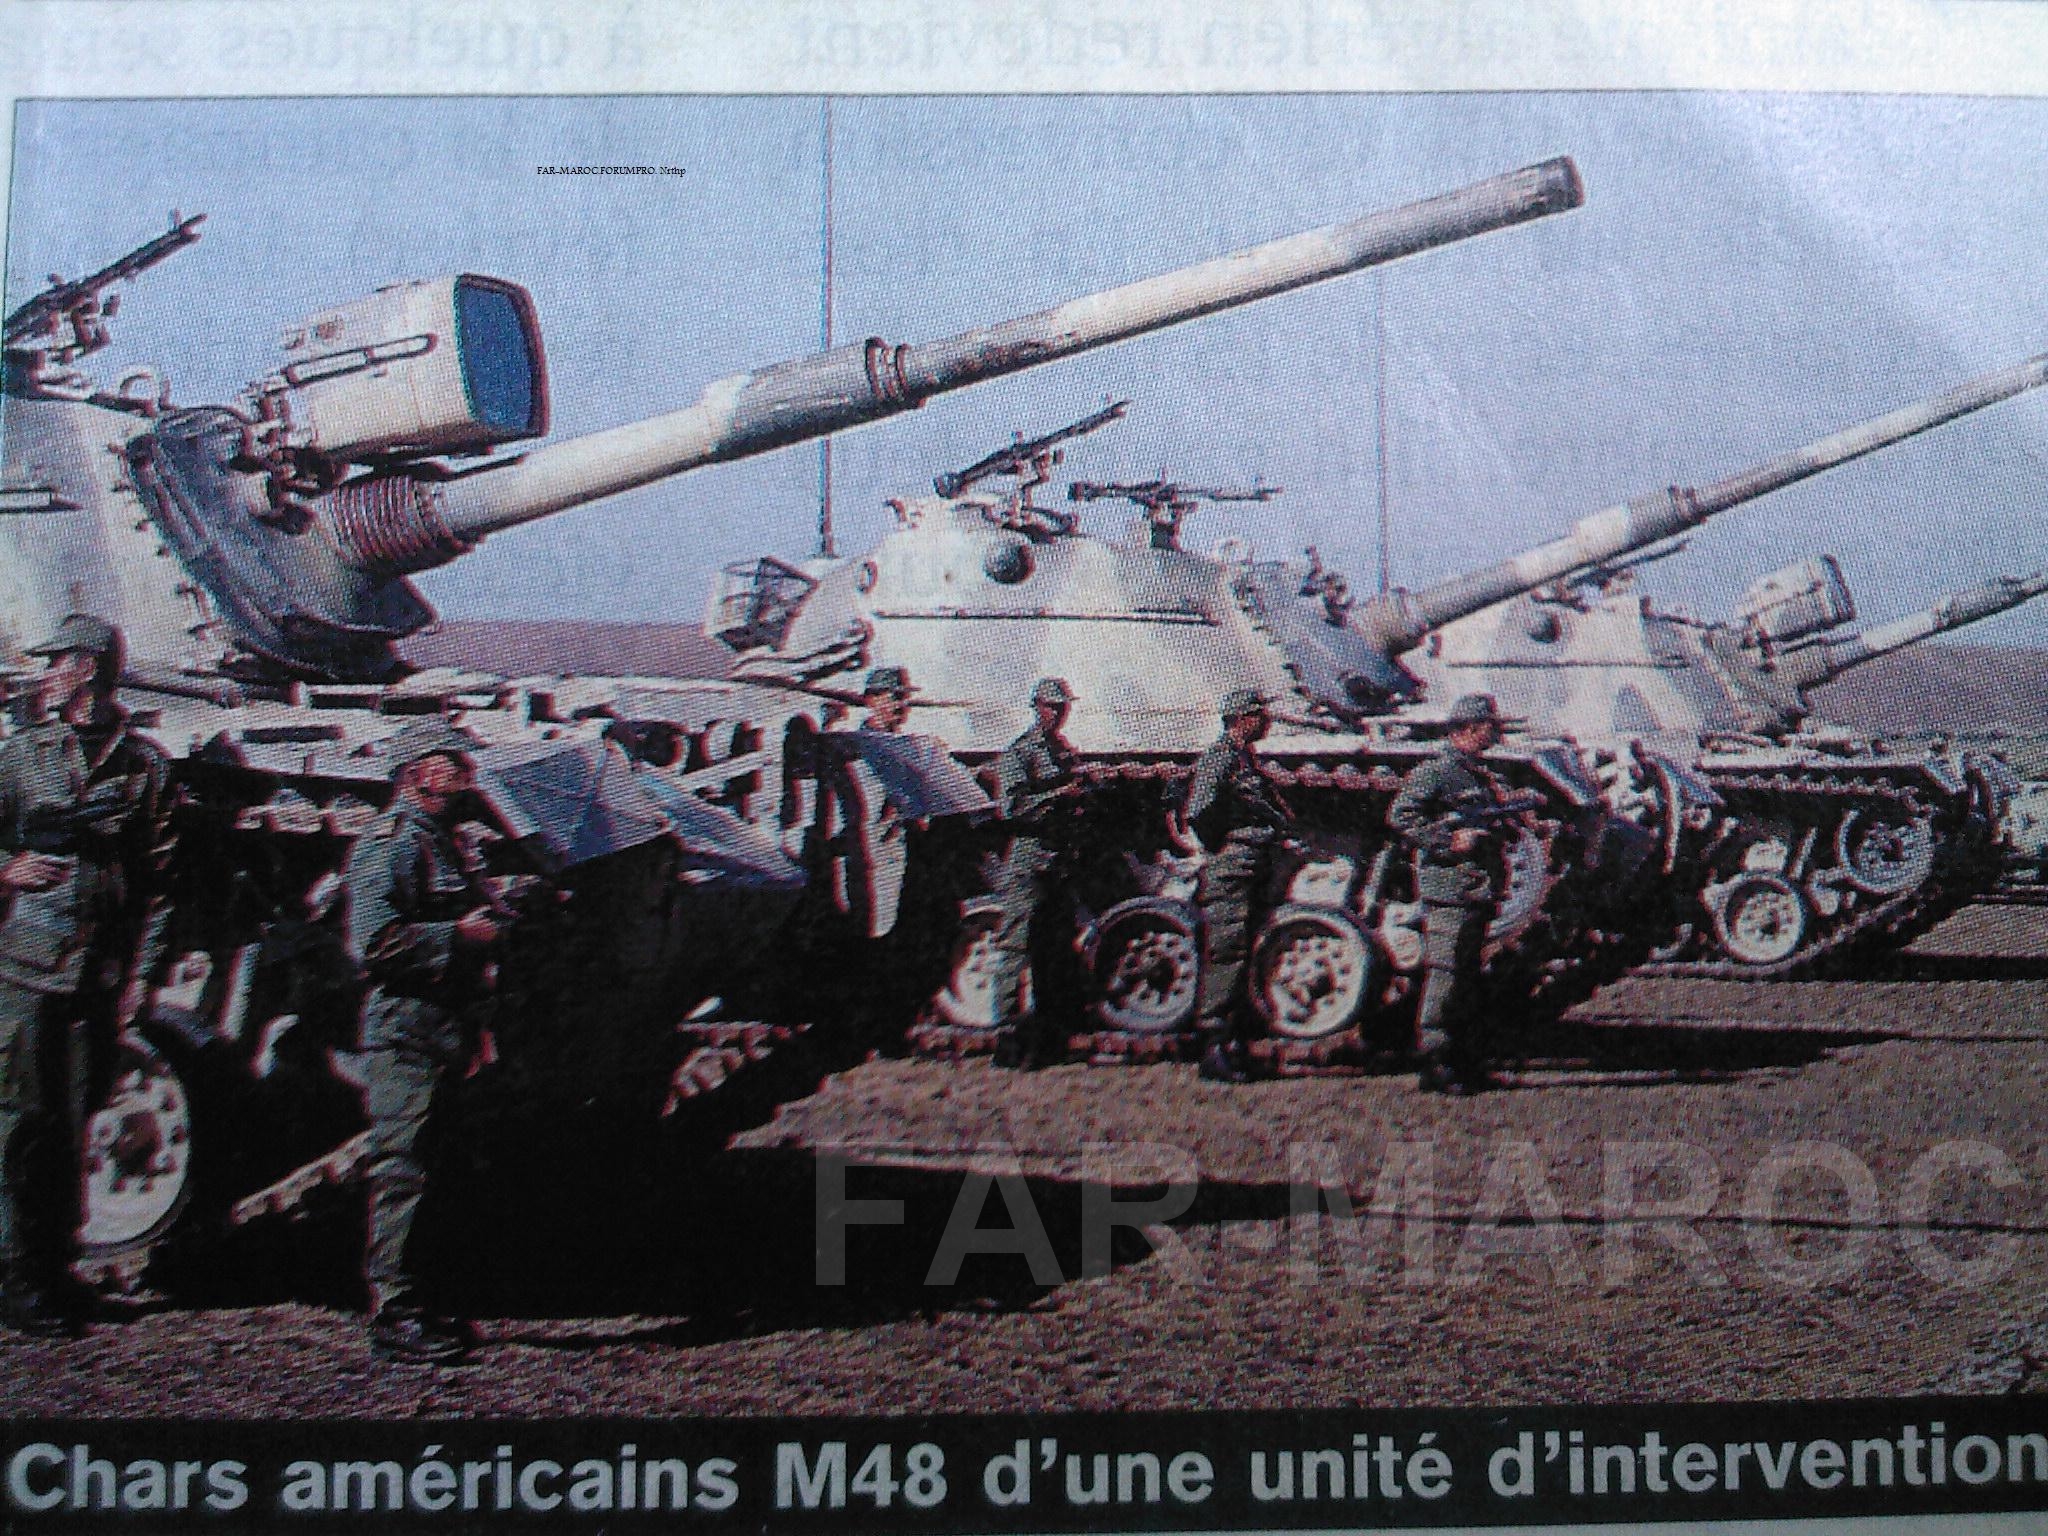 M48A5 Patton des FAR / Moroccan M48A5 Patton - Page 3 49309107756_5ed2d538f7_o